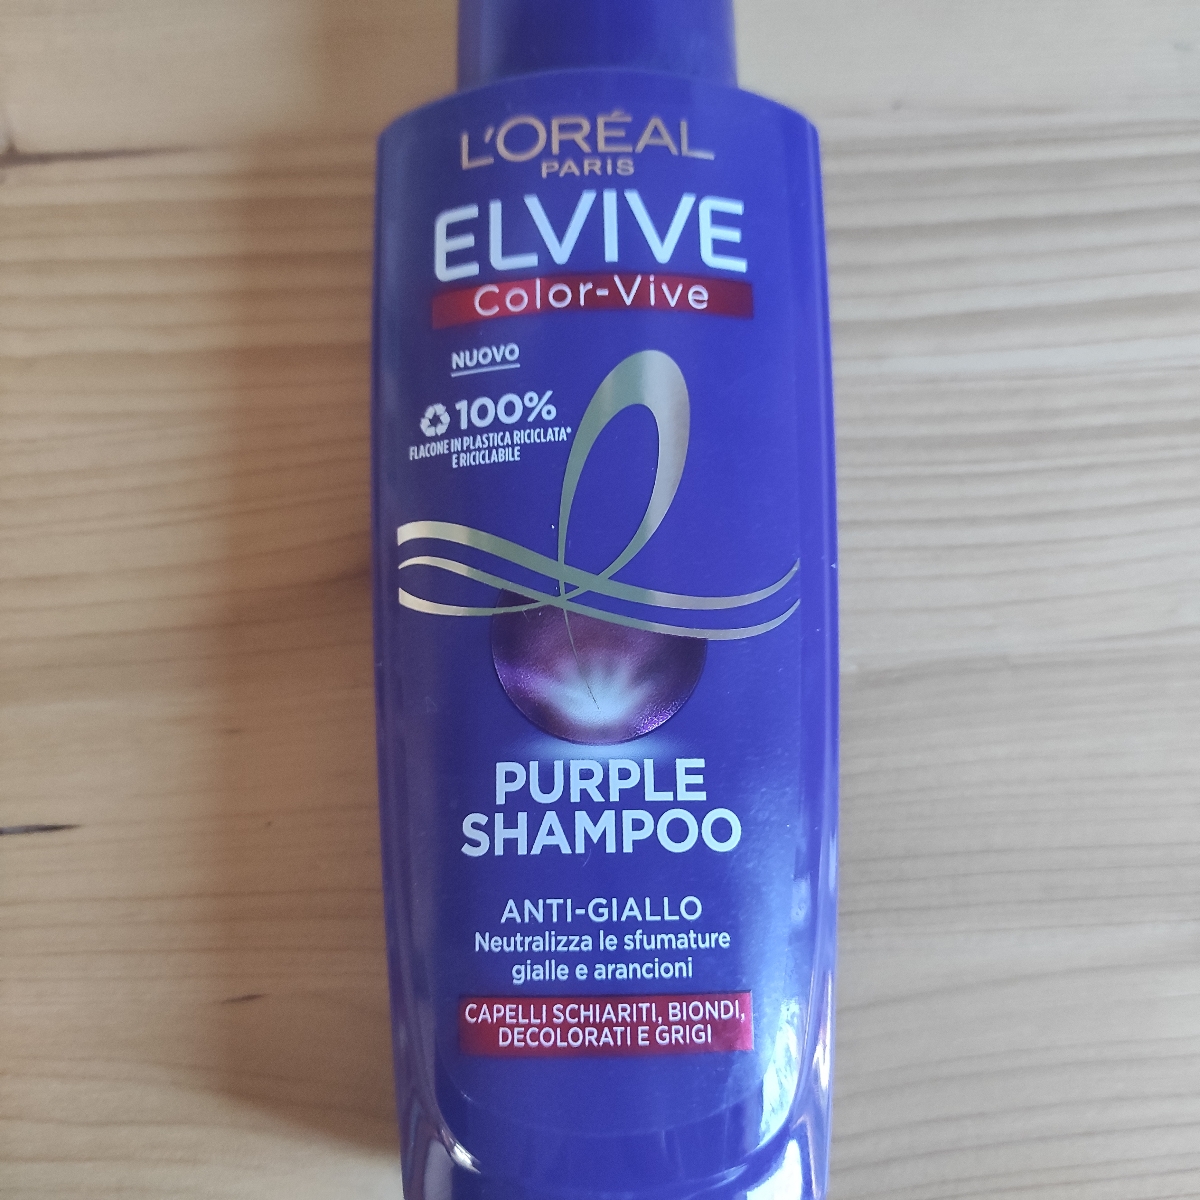 Elvive Shampoo anti giallo Review | abillion